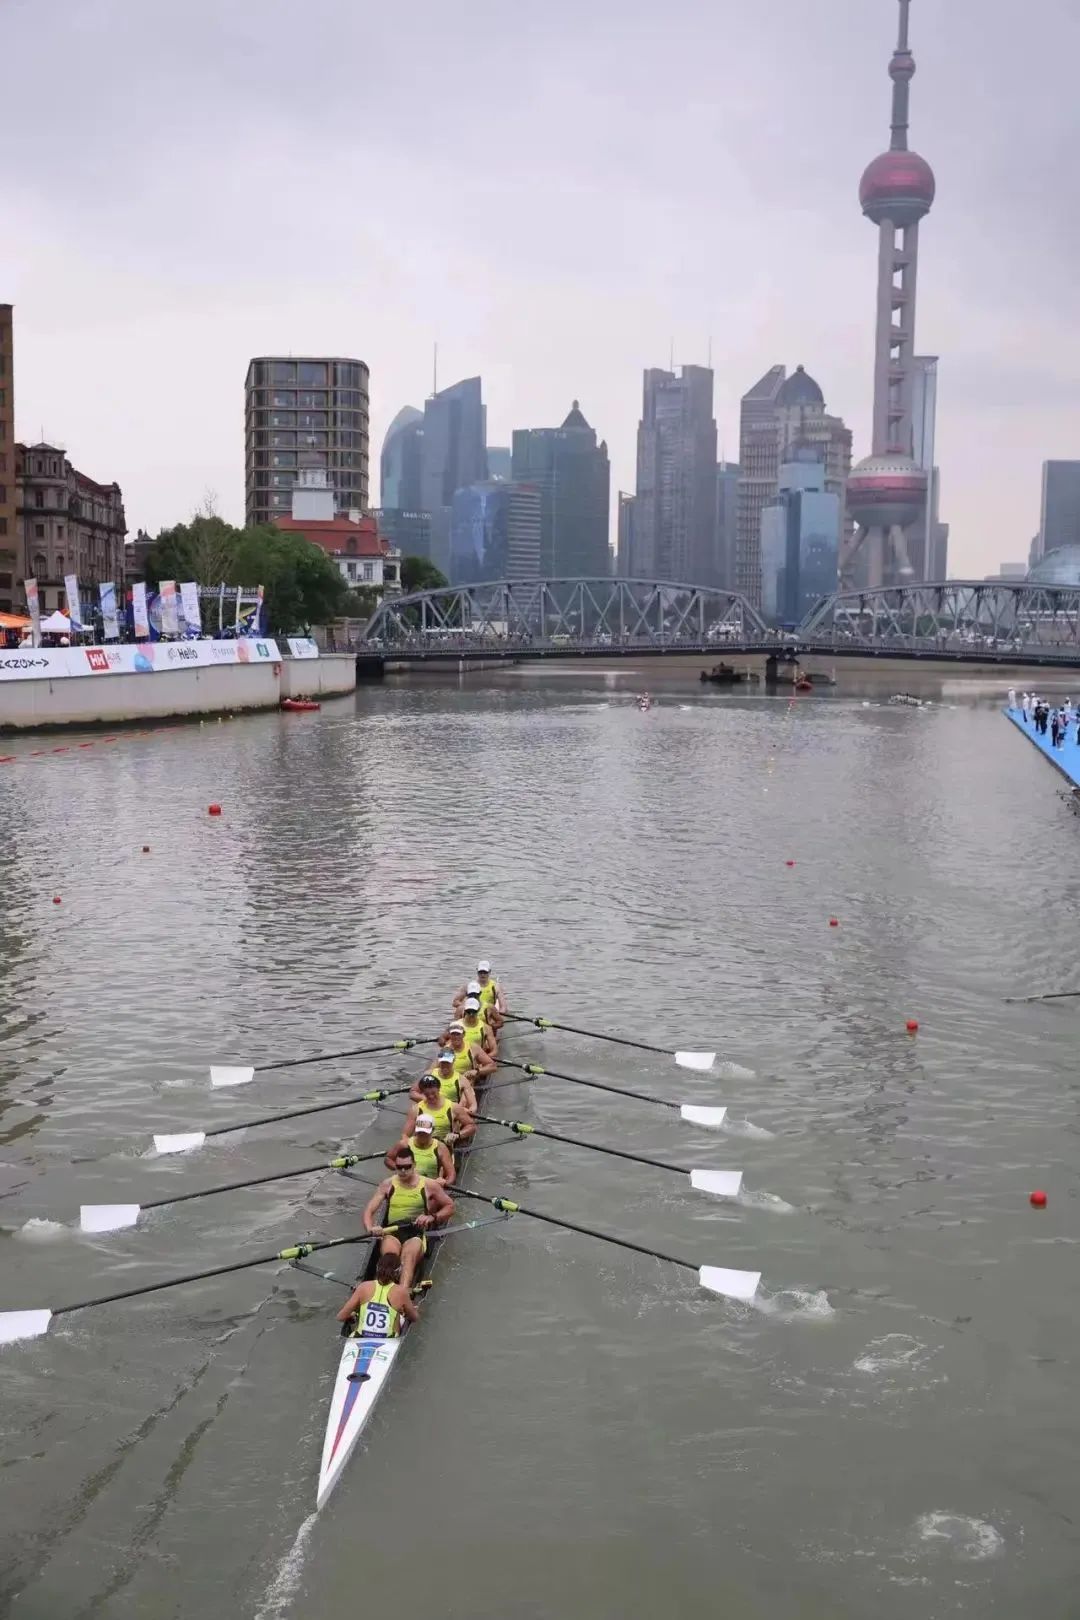 苏州河上书写“新故事” 2023上艇公开赛有了“国际范儿”